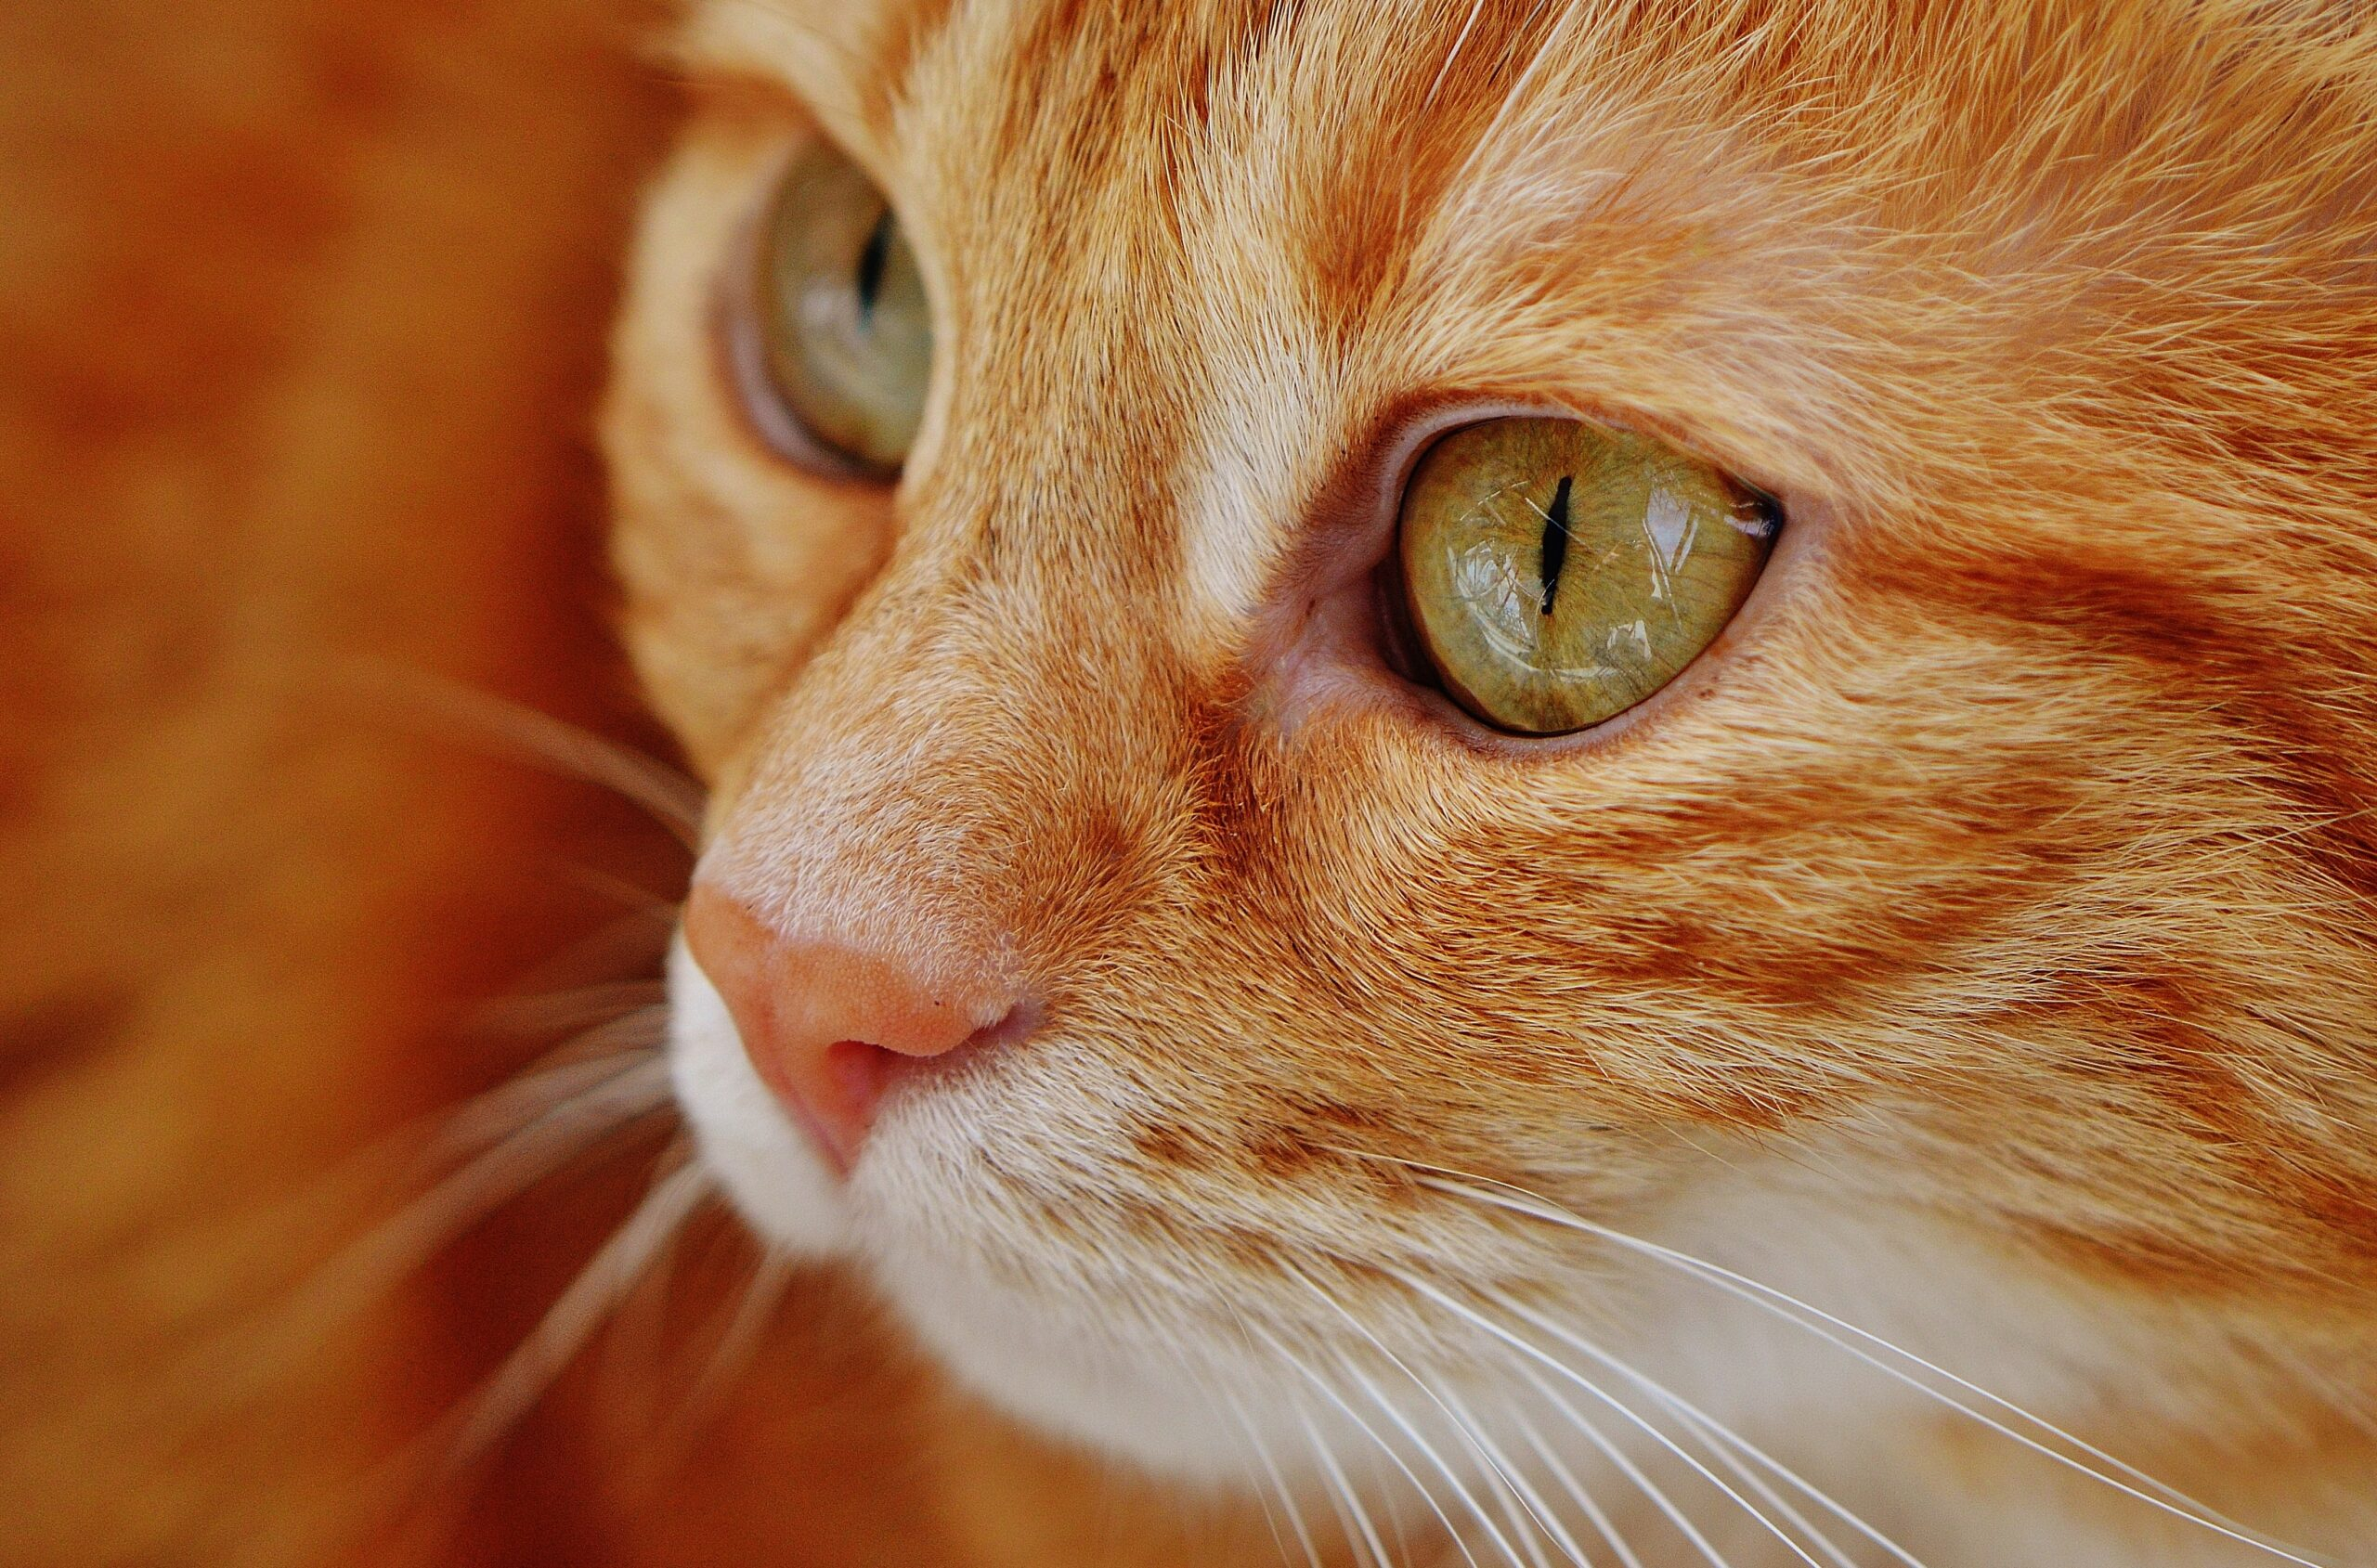 Модель с кошкой на красной дорожке вызвала обеспокоенность зоозащитников